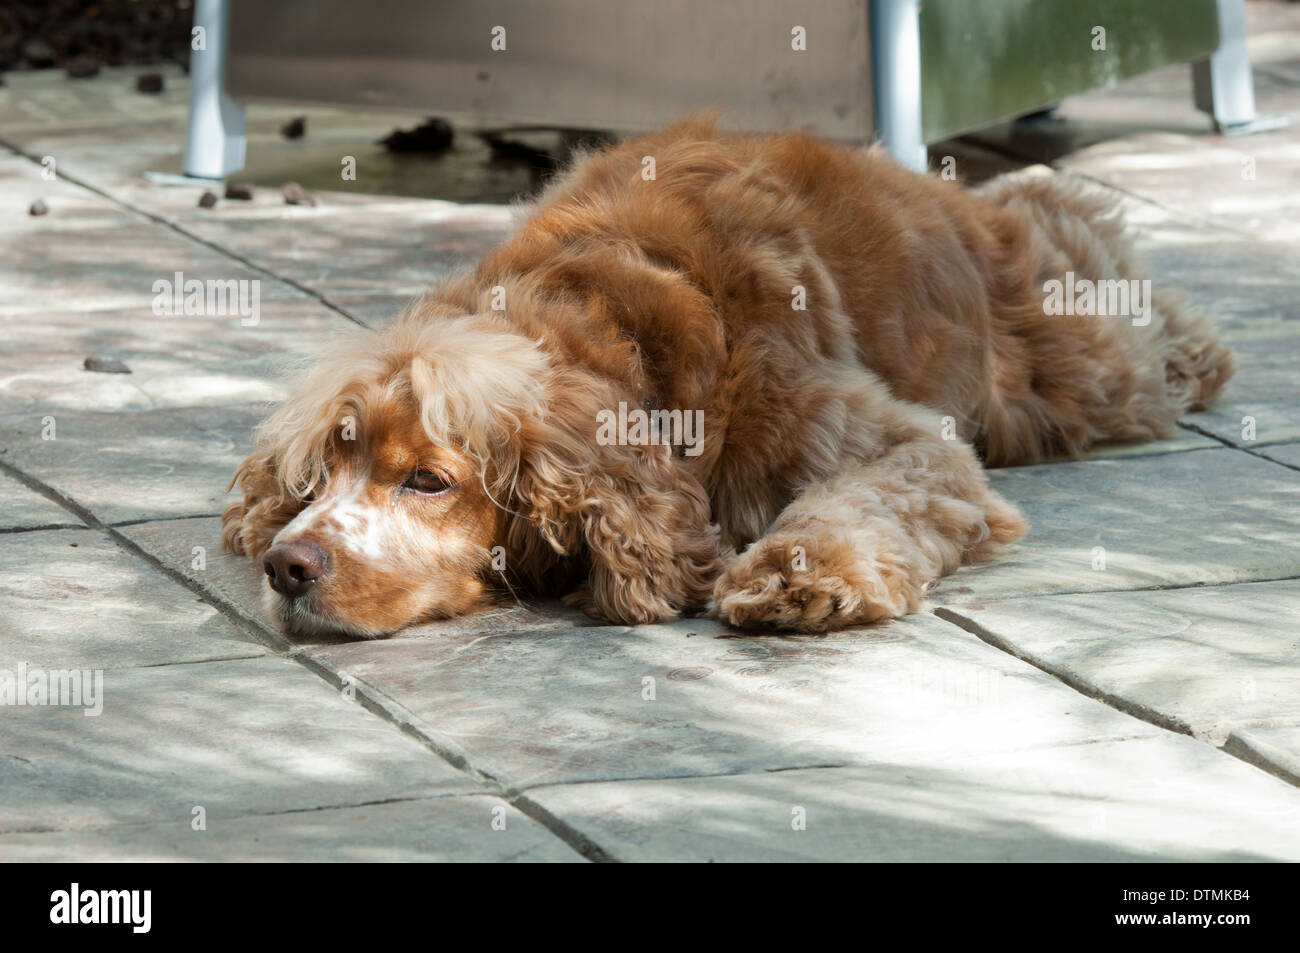 Cocker Spaniel Familienhund liegt ausgestreckt flach auf konkrete schattiges Fliesen schauen traurig, gelangweilt oder warten Stockfoto